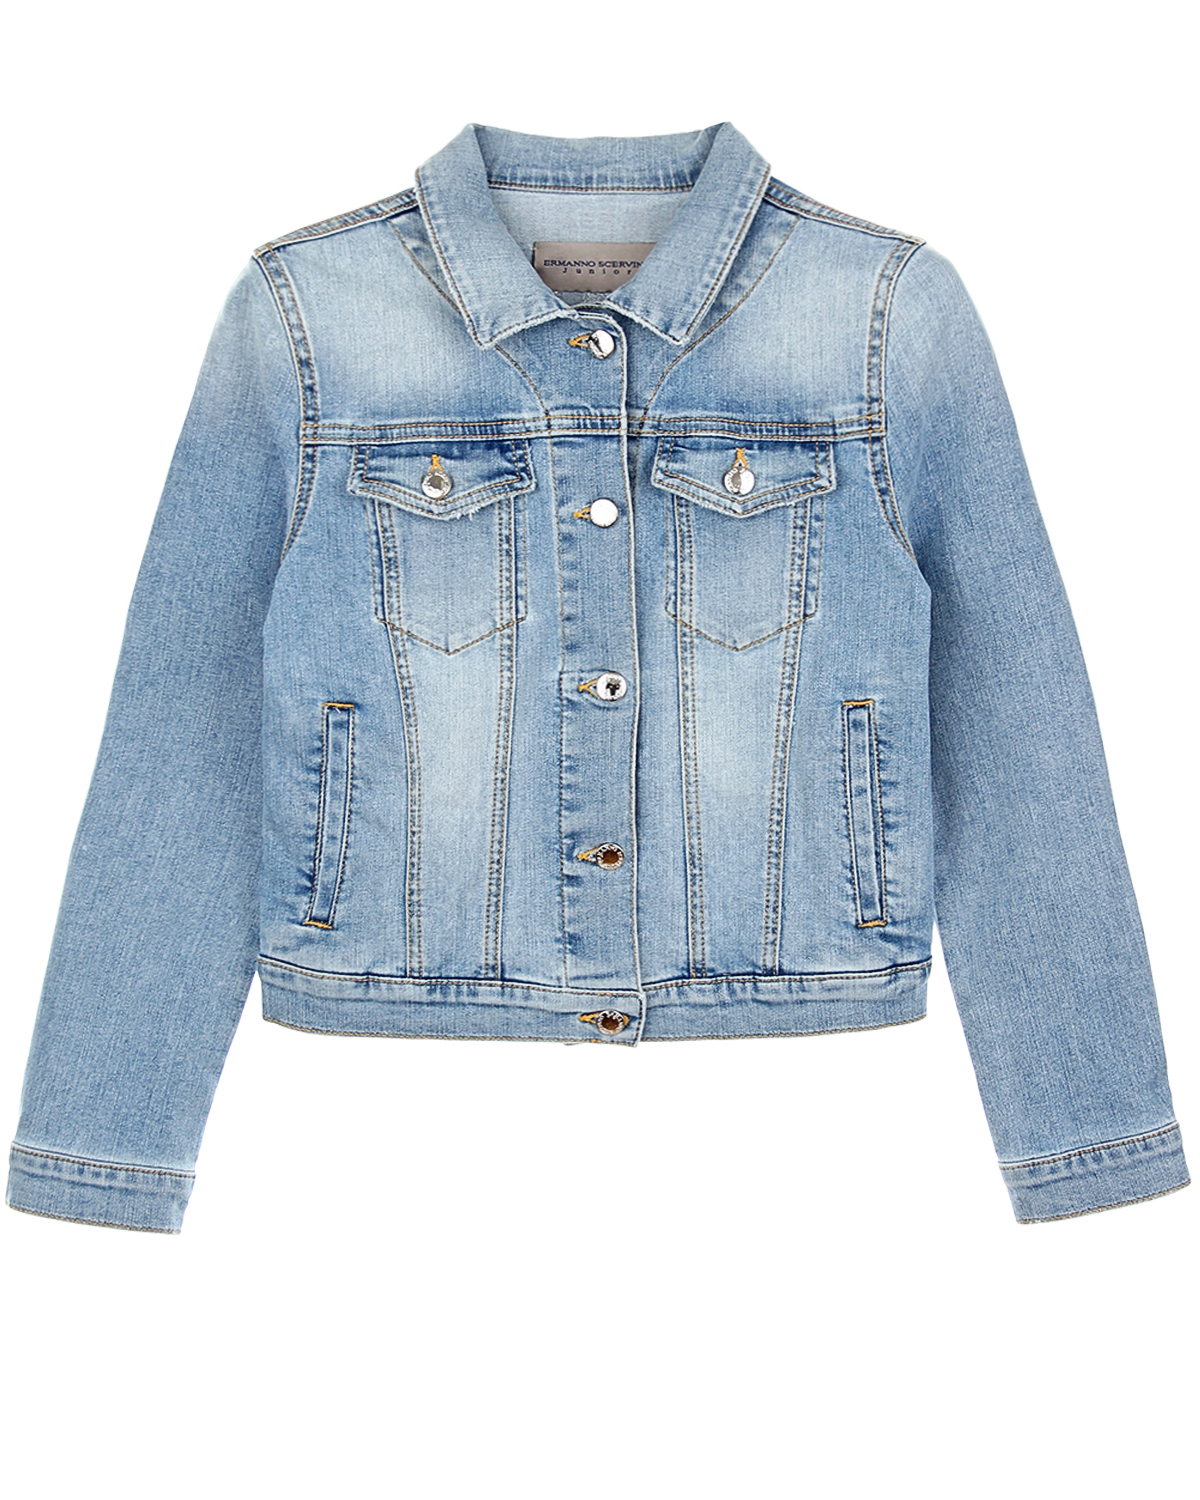 Джинсовая куртка со стразами Ermanno Scervino детская, размер 176, цвет голубой